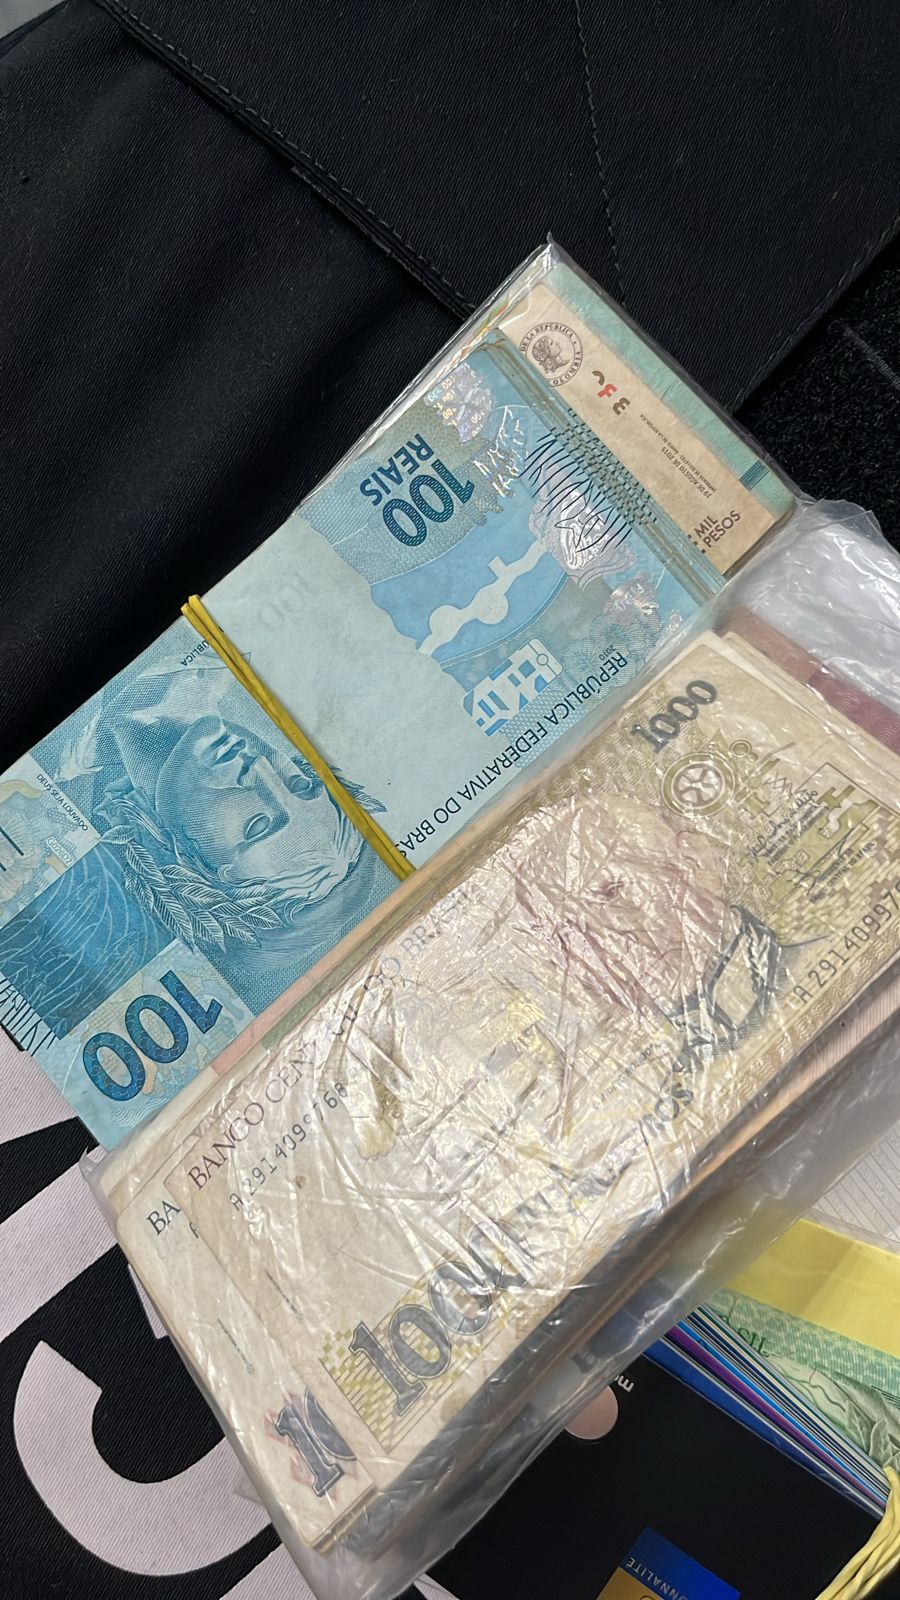 Maços de dinheiro foram apreendidos na operação (Foto: Polícia Civil/Divulgação)